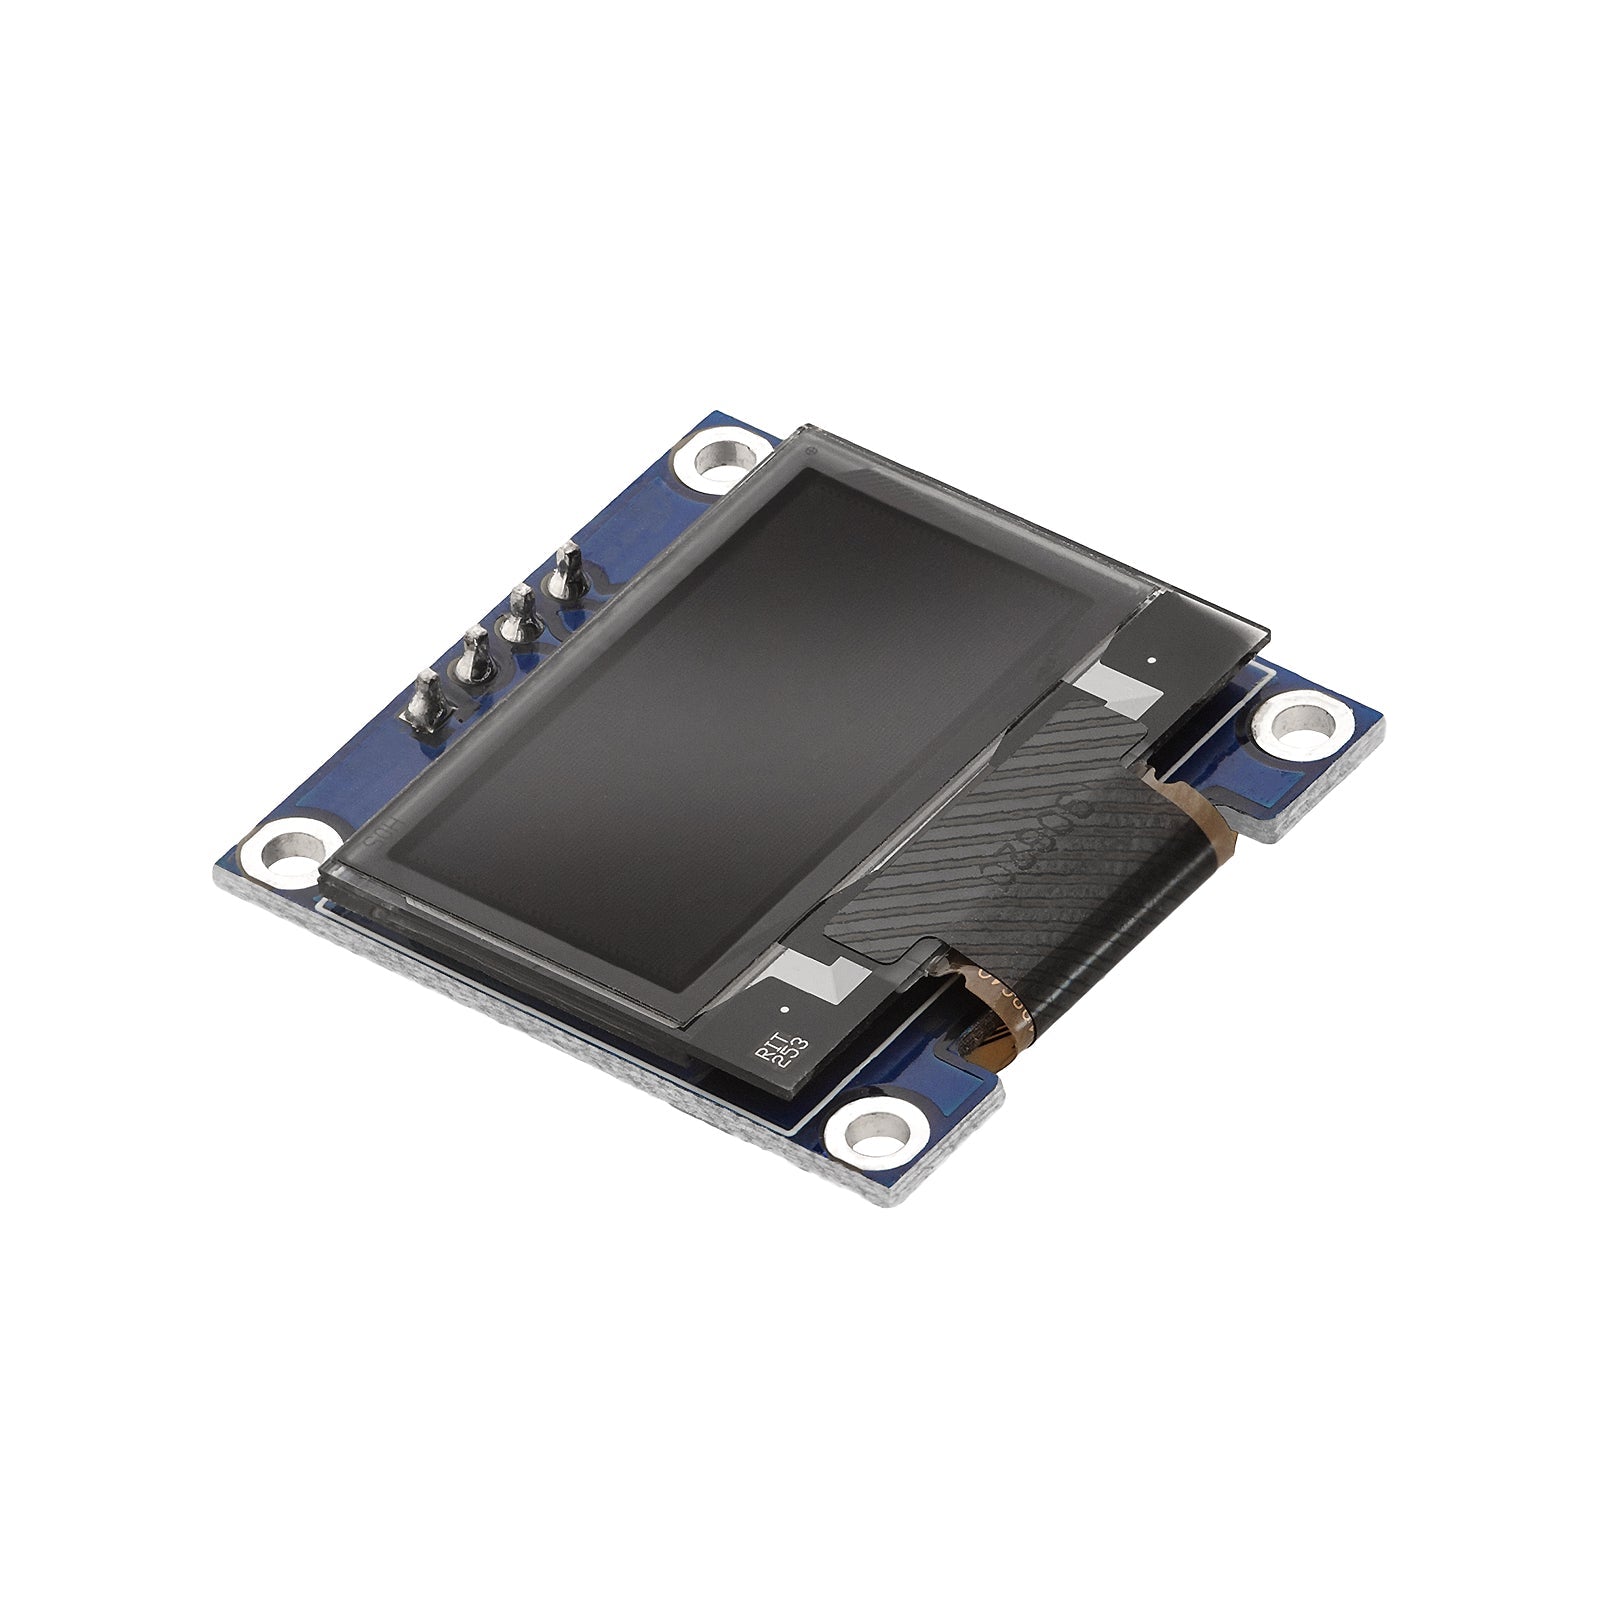 0,96 Zoll OLED SSD1306 Display I2C 128 x 64 Pixel kompatibel mit Arduino und Raspberry Pi